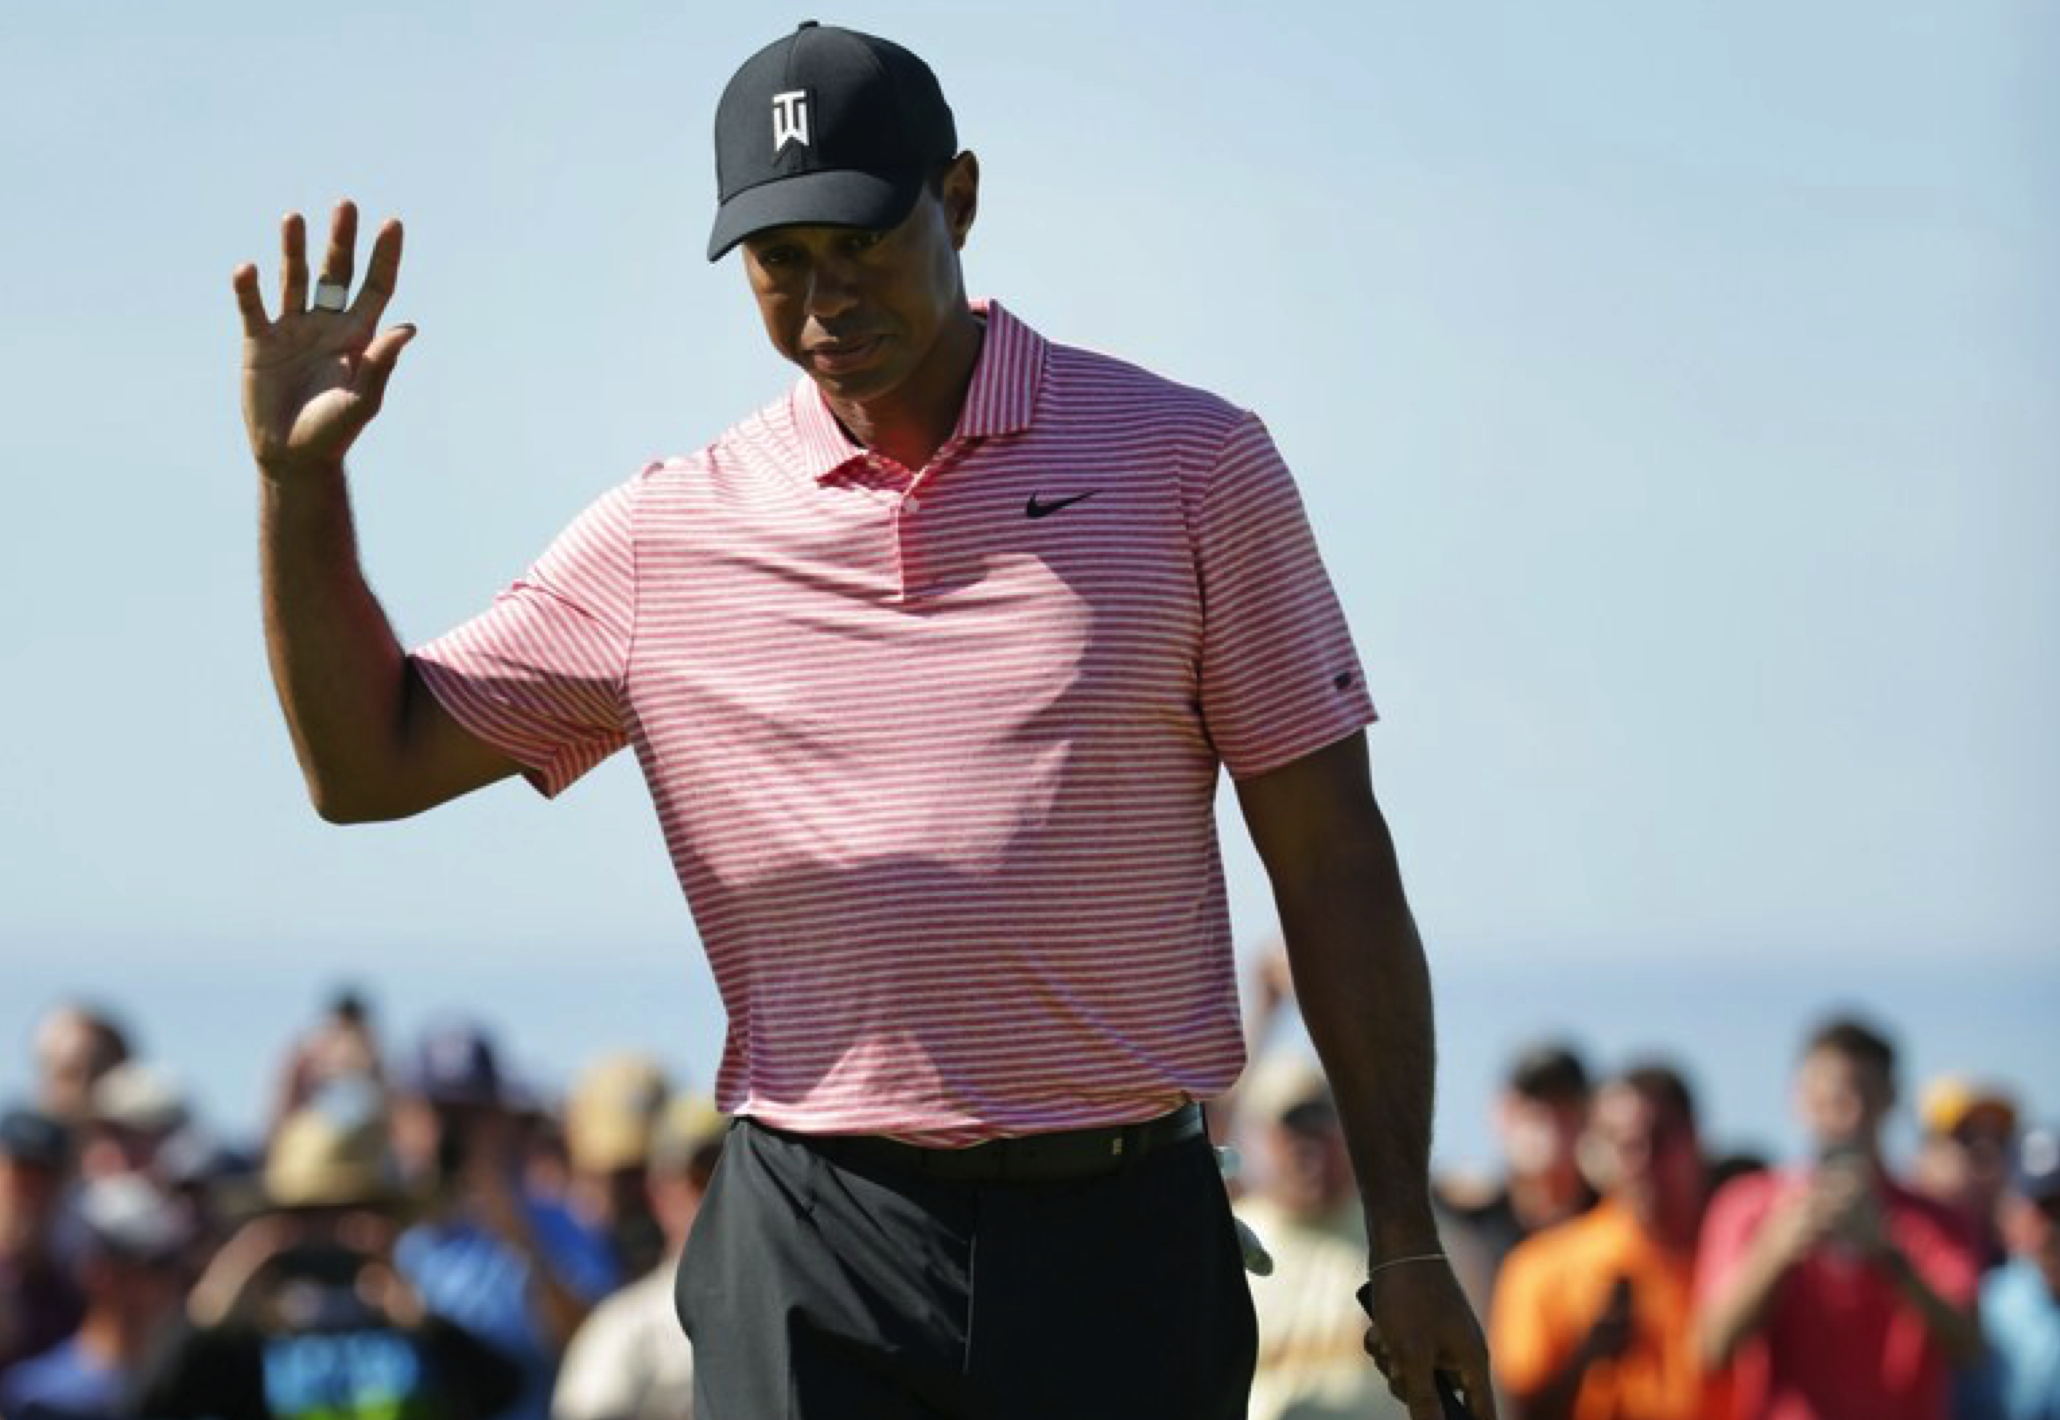 Tiger Woods kết thúc Farmers Insurance Open với thành tích “tích cực” đúng như mục tiêu